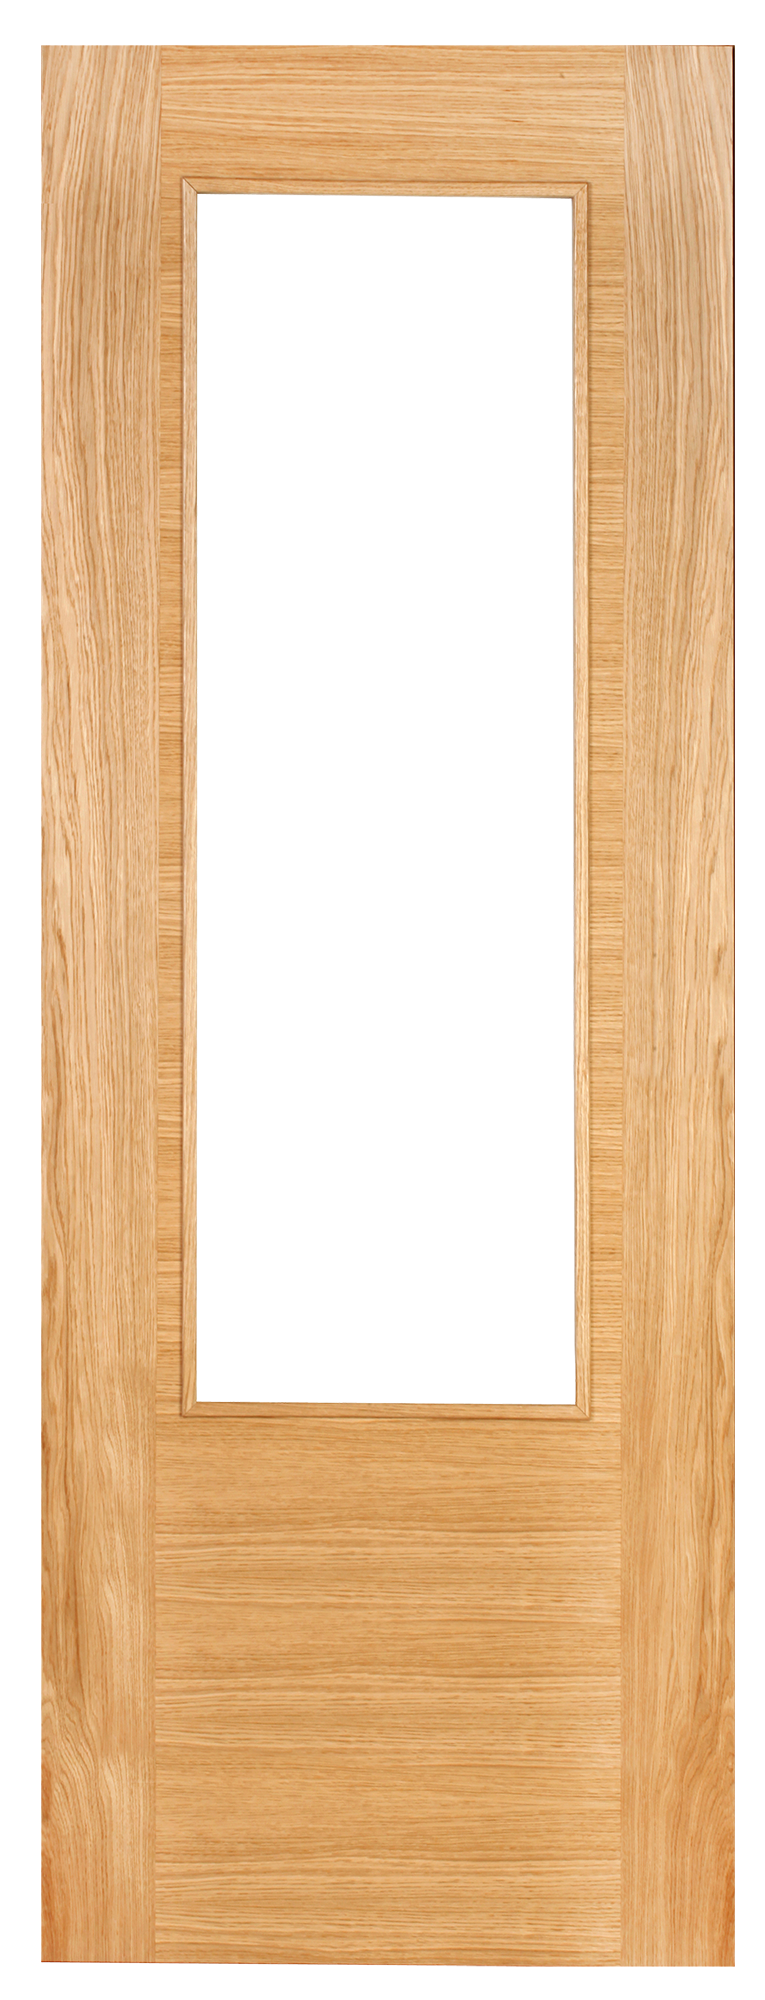 Puerta corredera niza roble line plus roble con cristal de 82.5cm